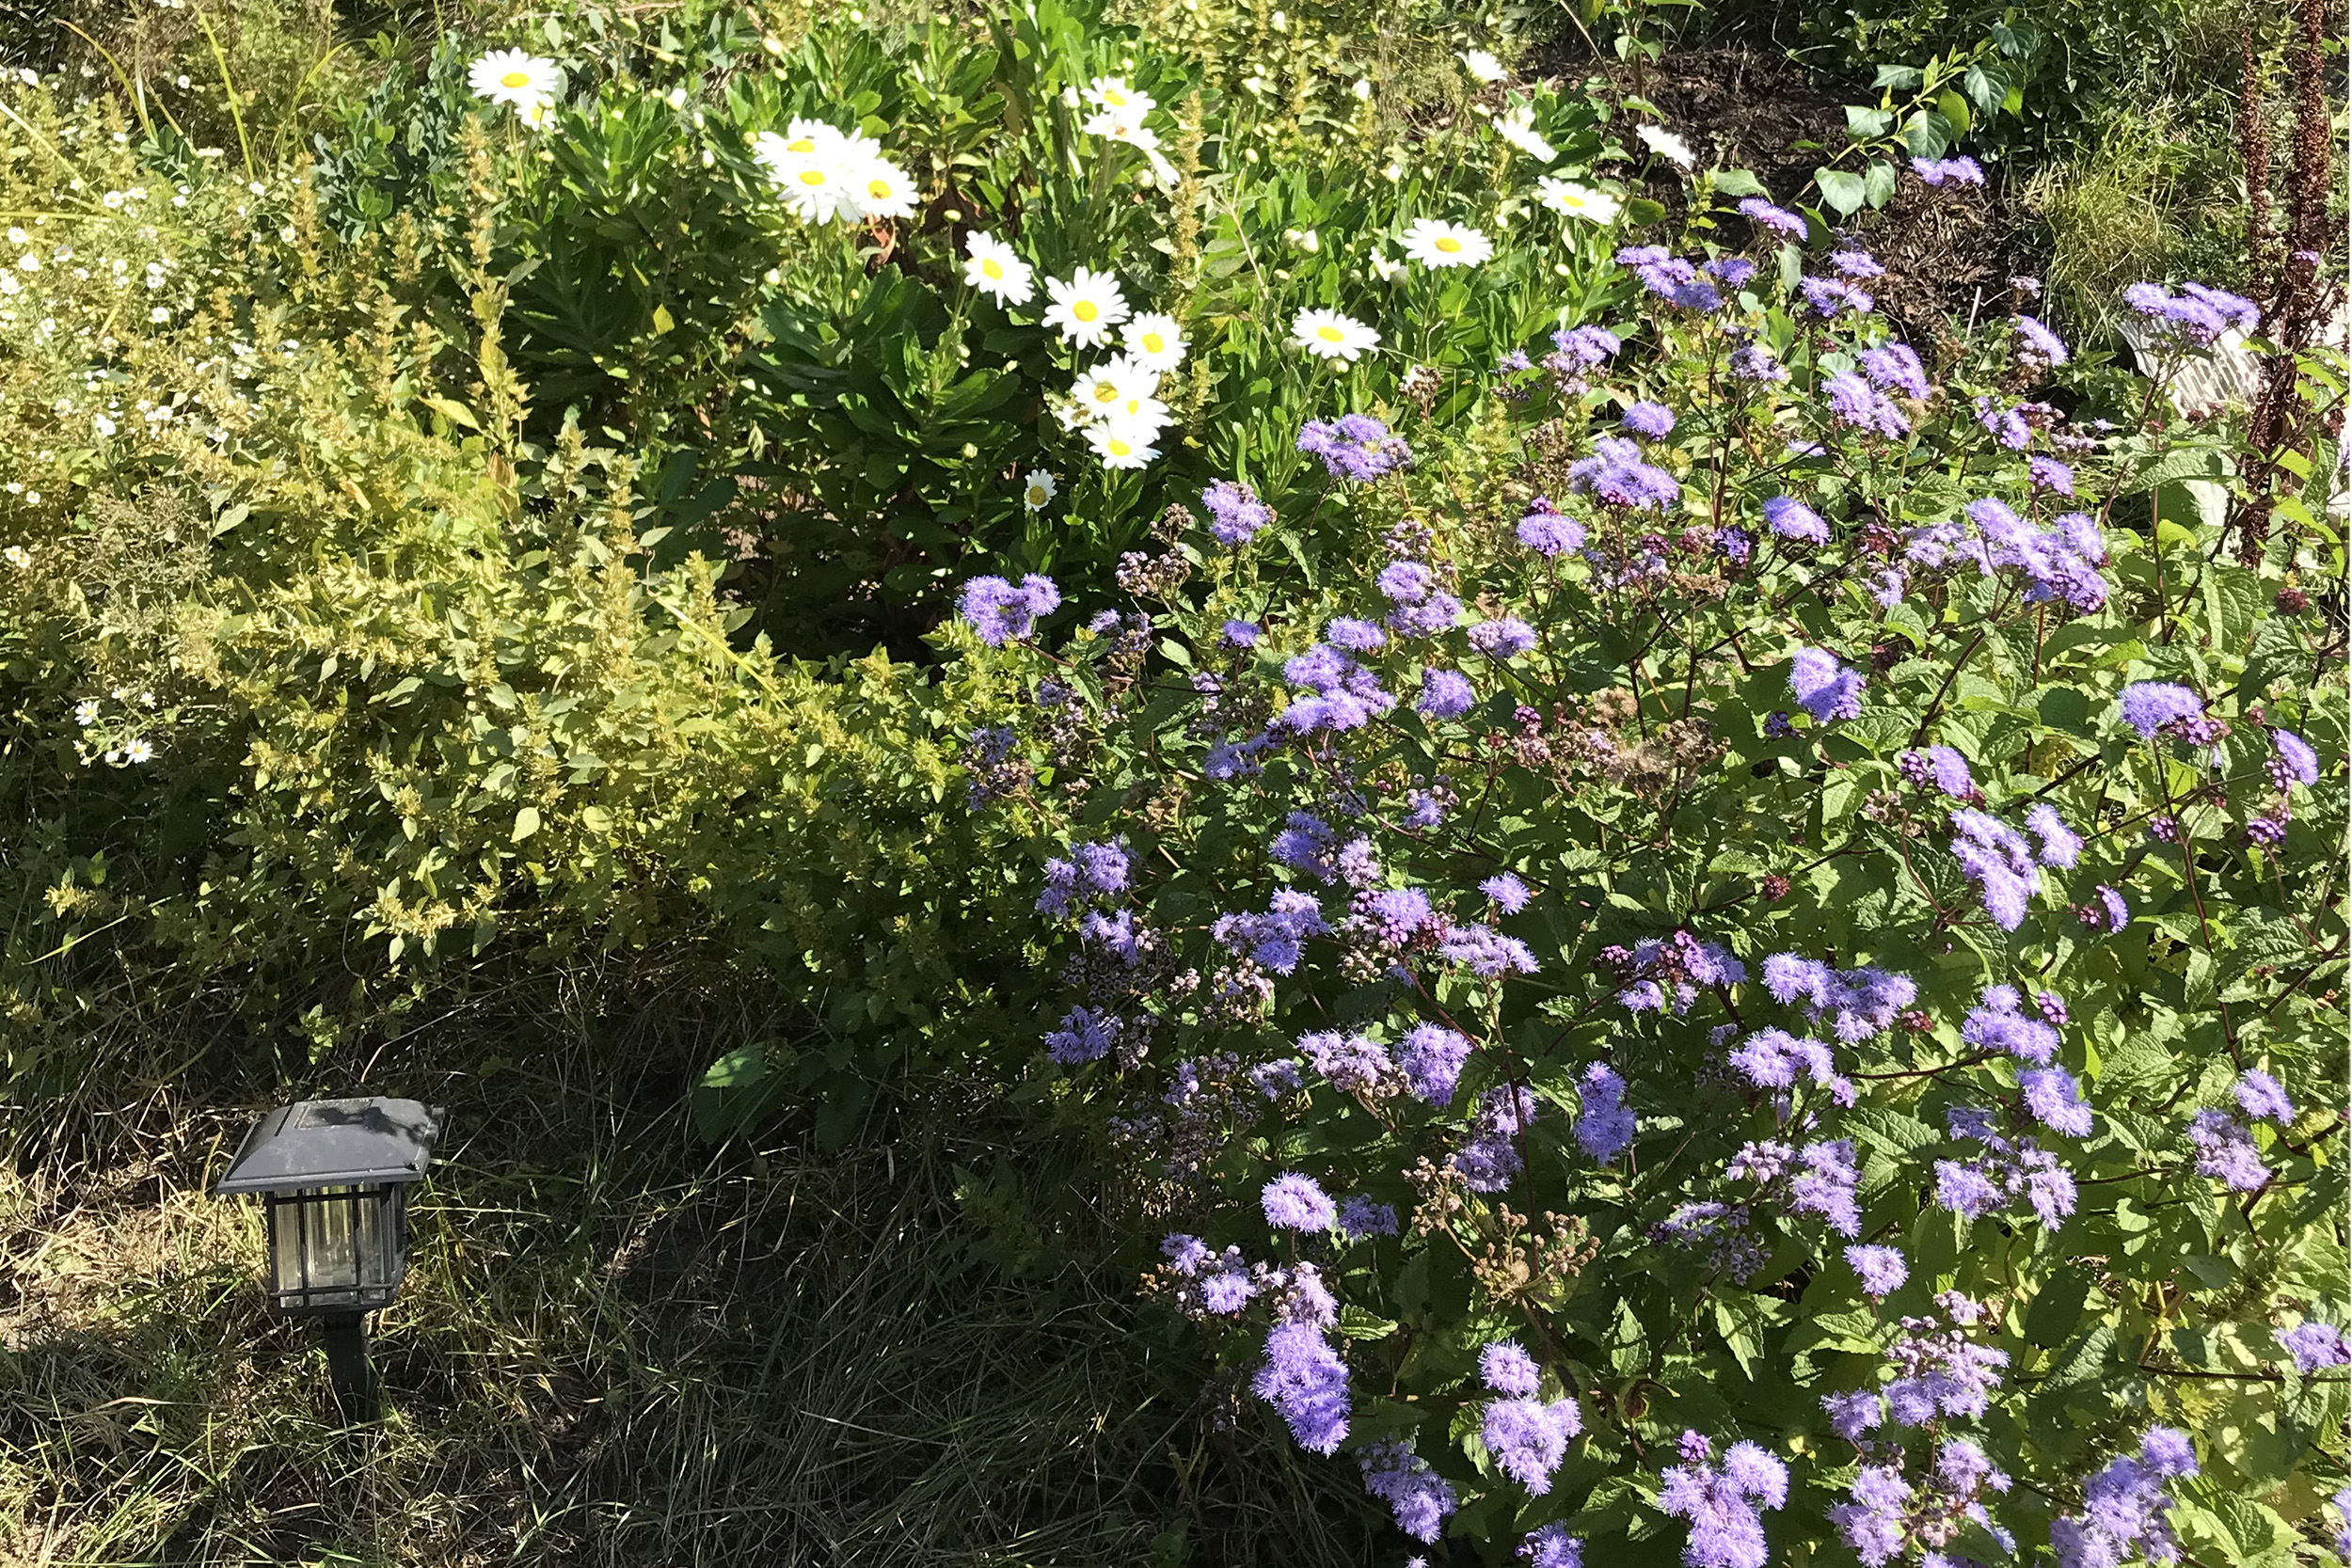 purple flowers growing in the plot